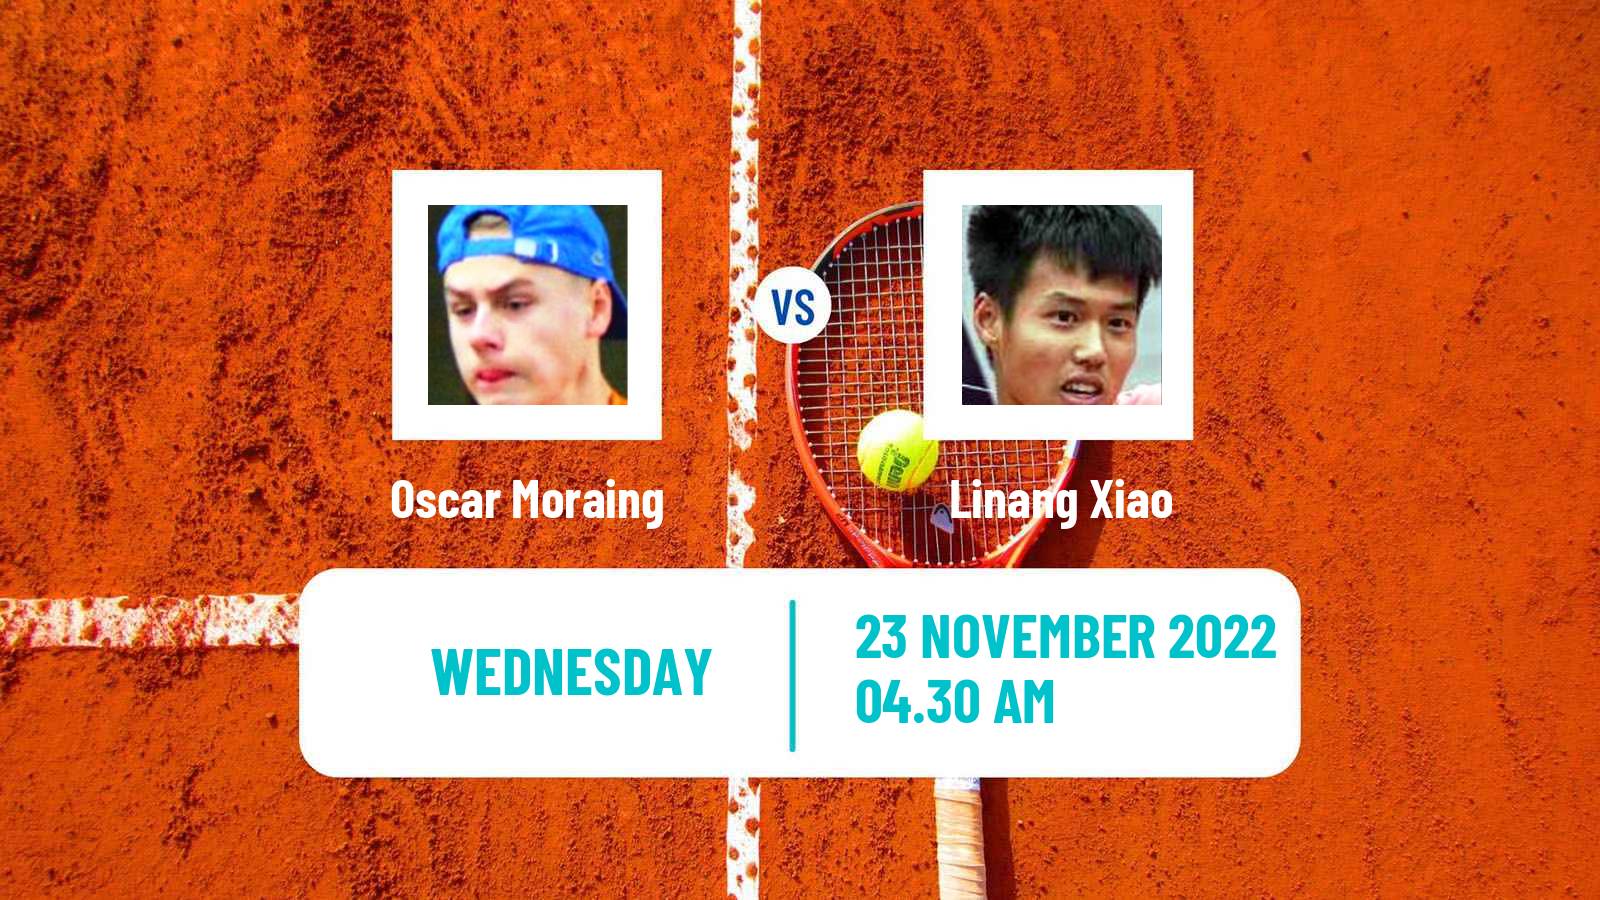 Tennis ITF Tournaments Oscar Moraing - Linang Xiao